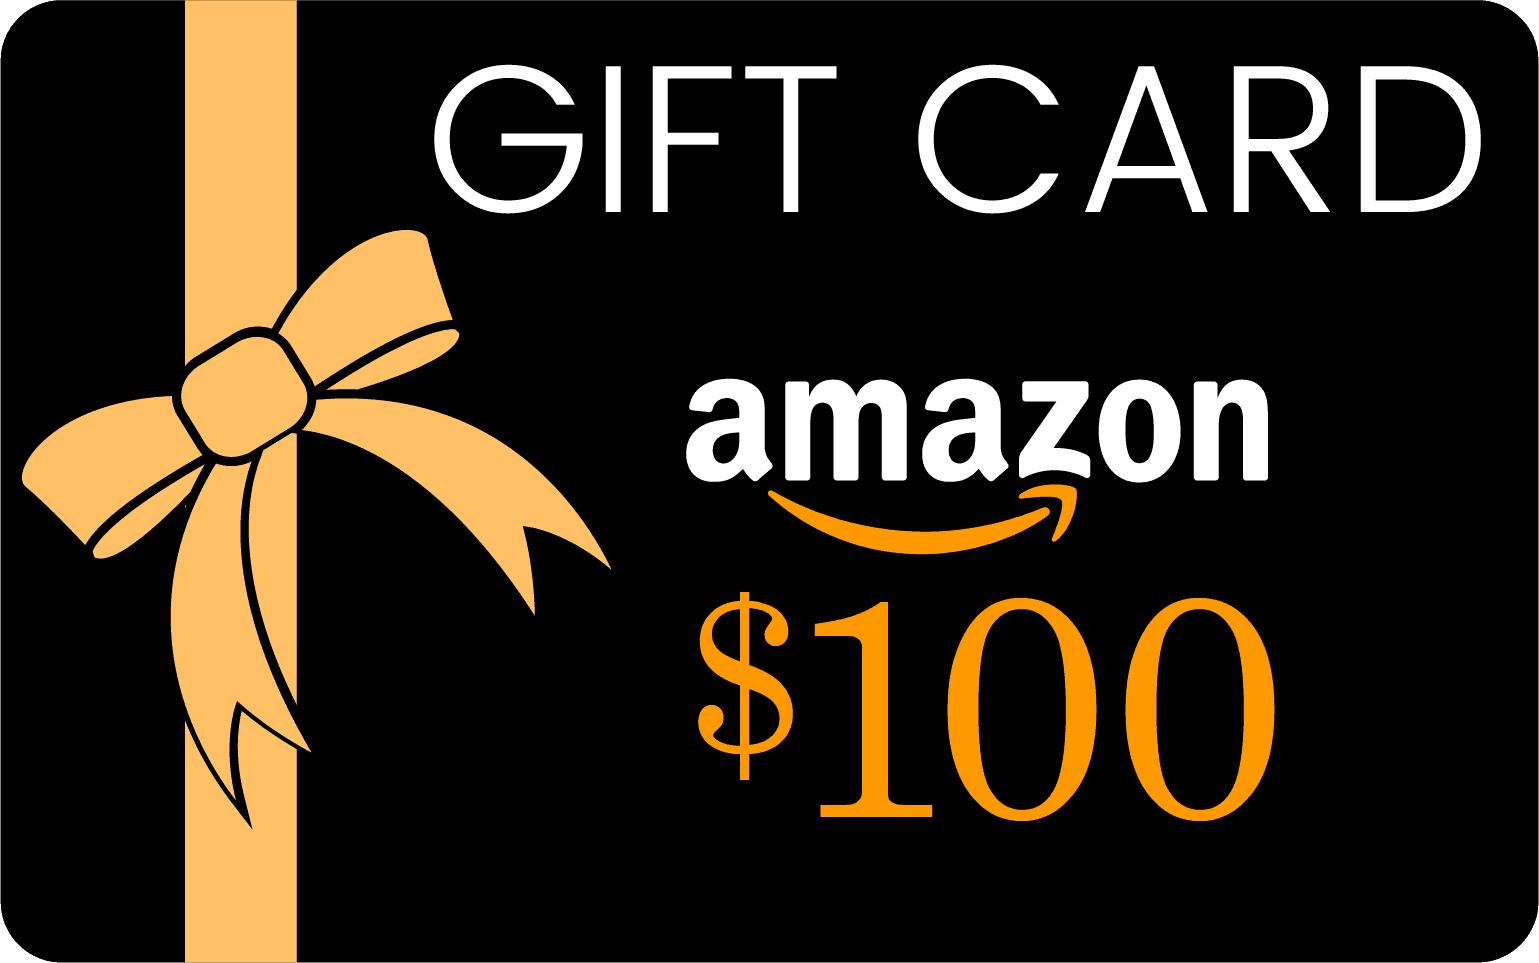  $100 Amazon Gift Card 